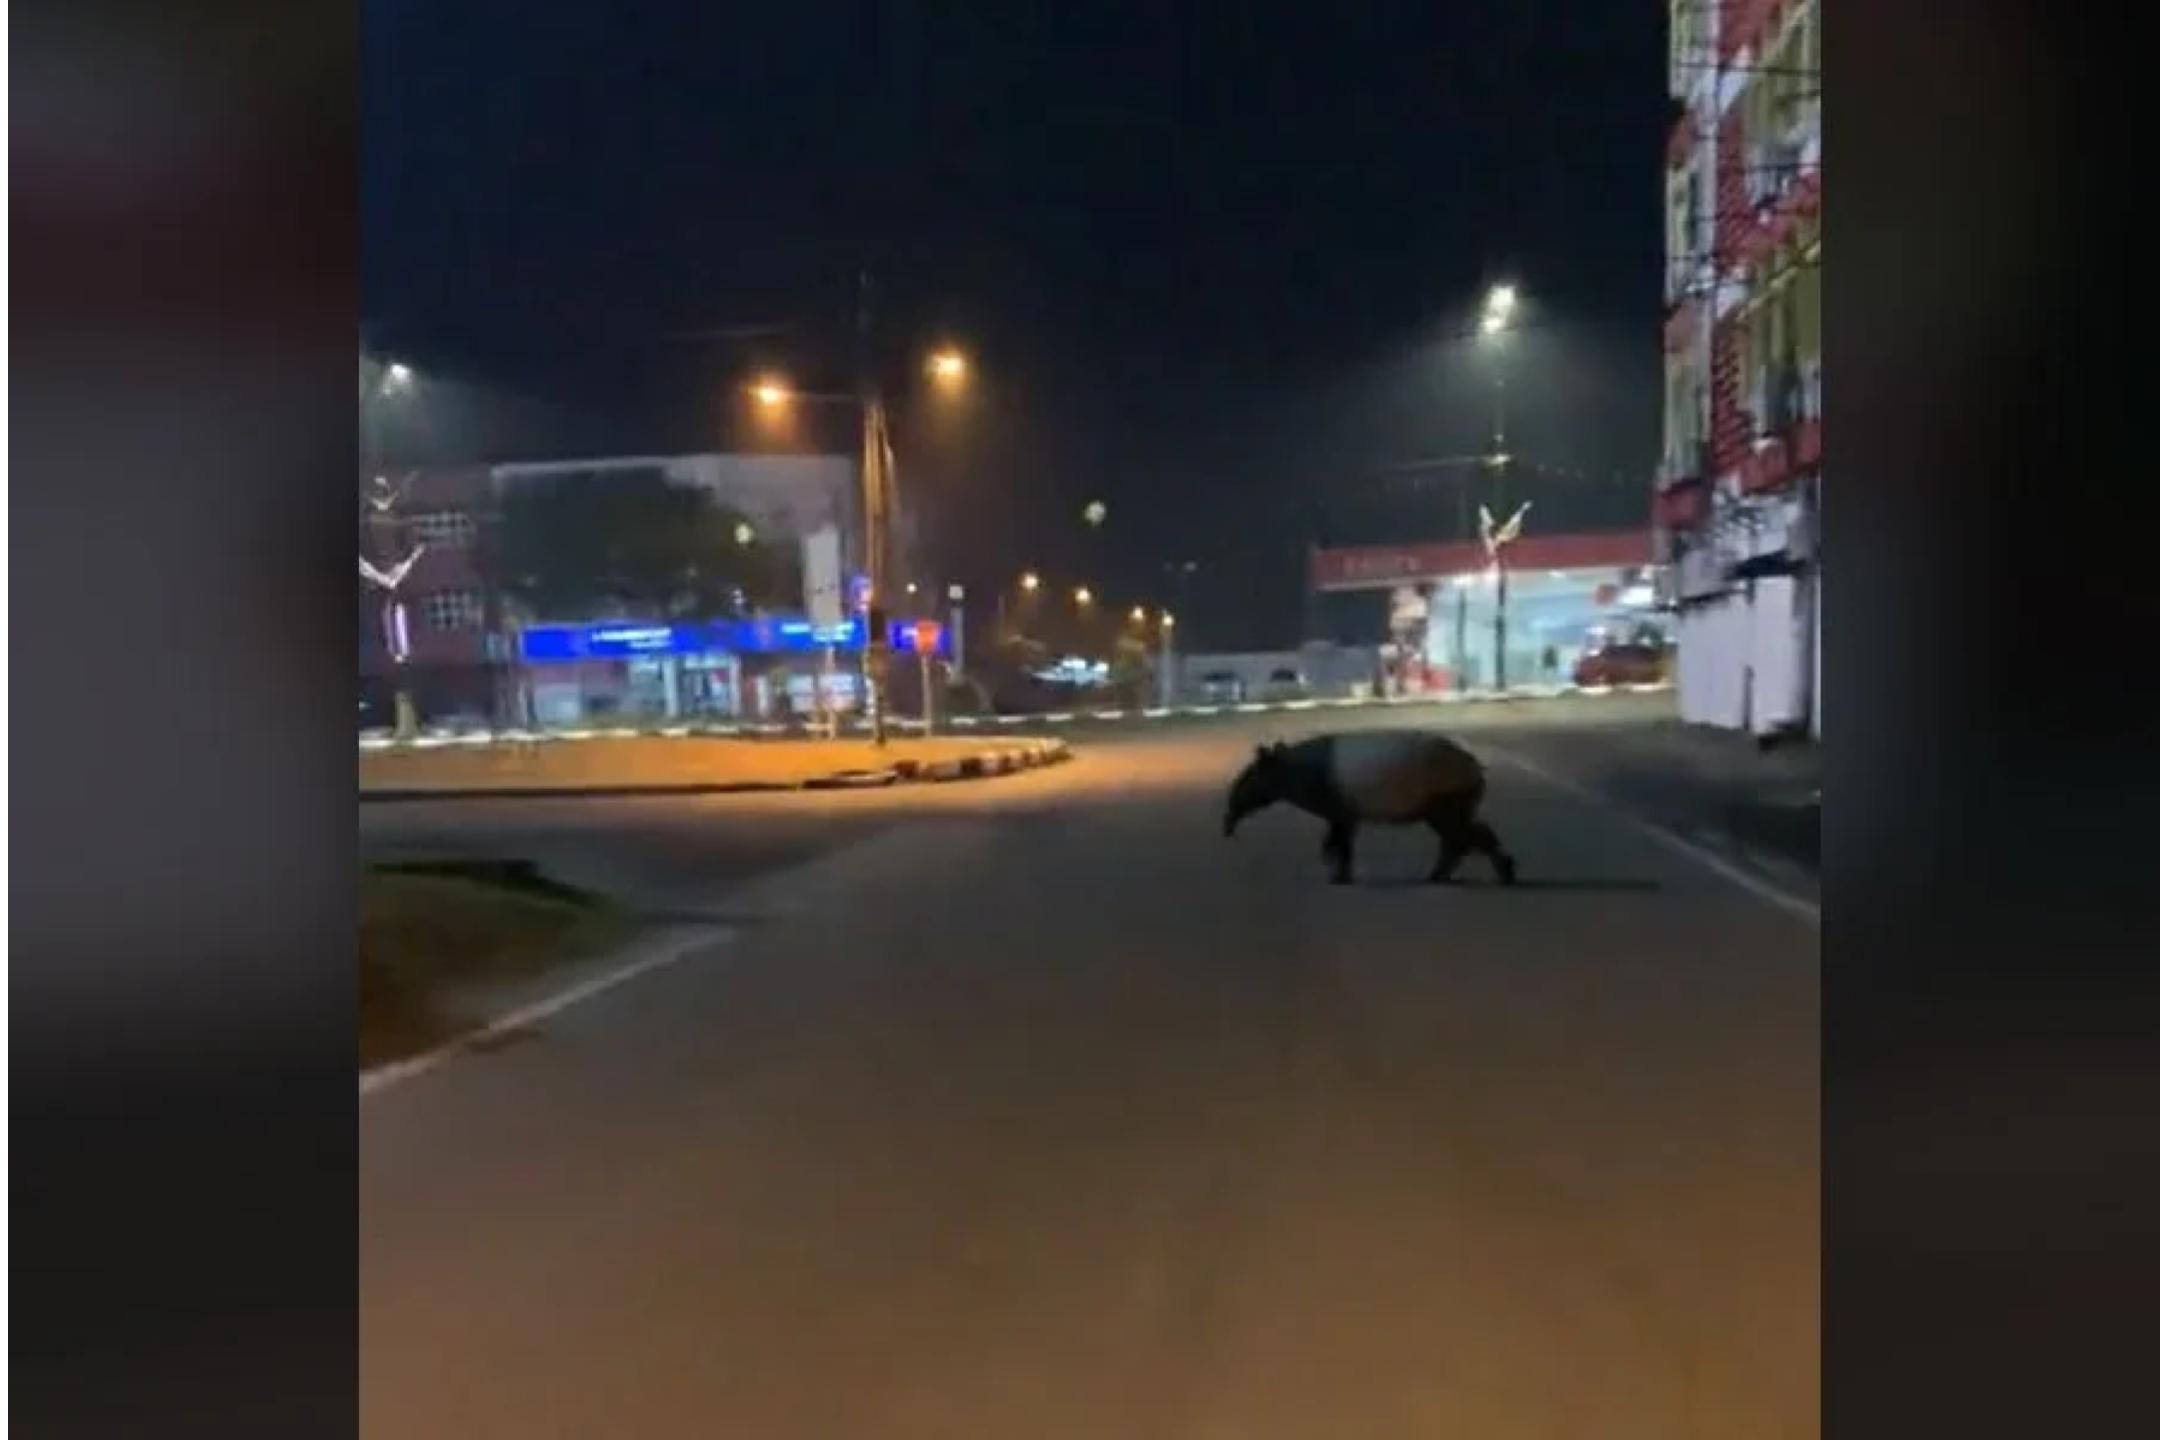 马来貘闯登州市街道  网民纷关心其安危